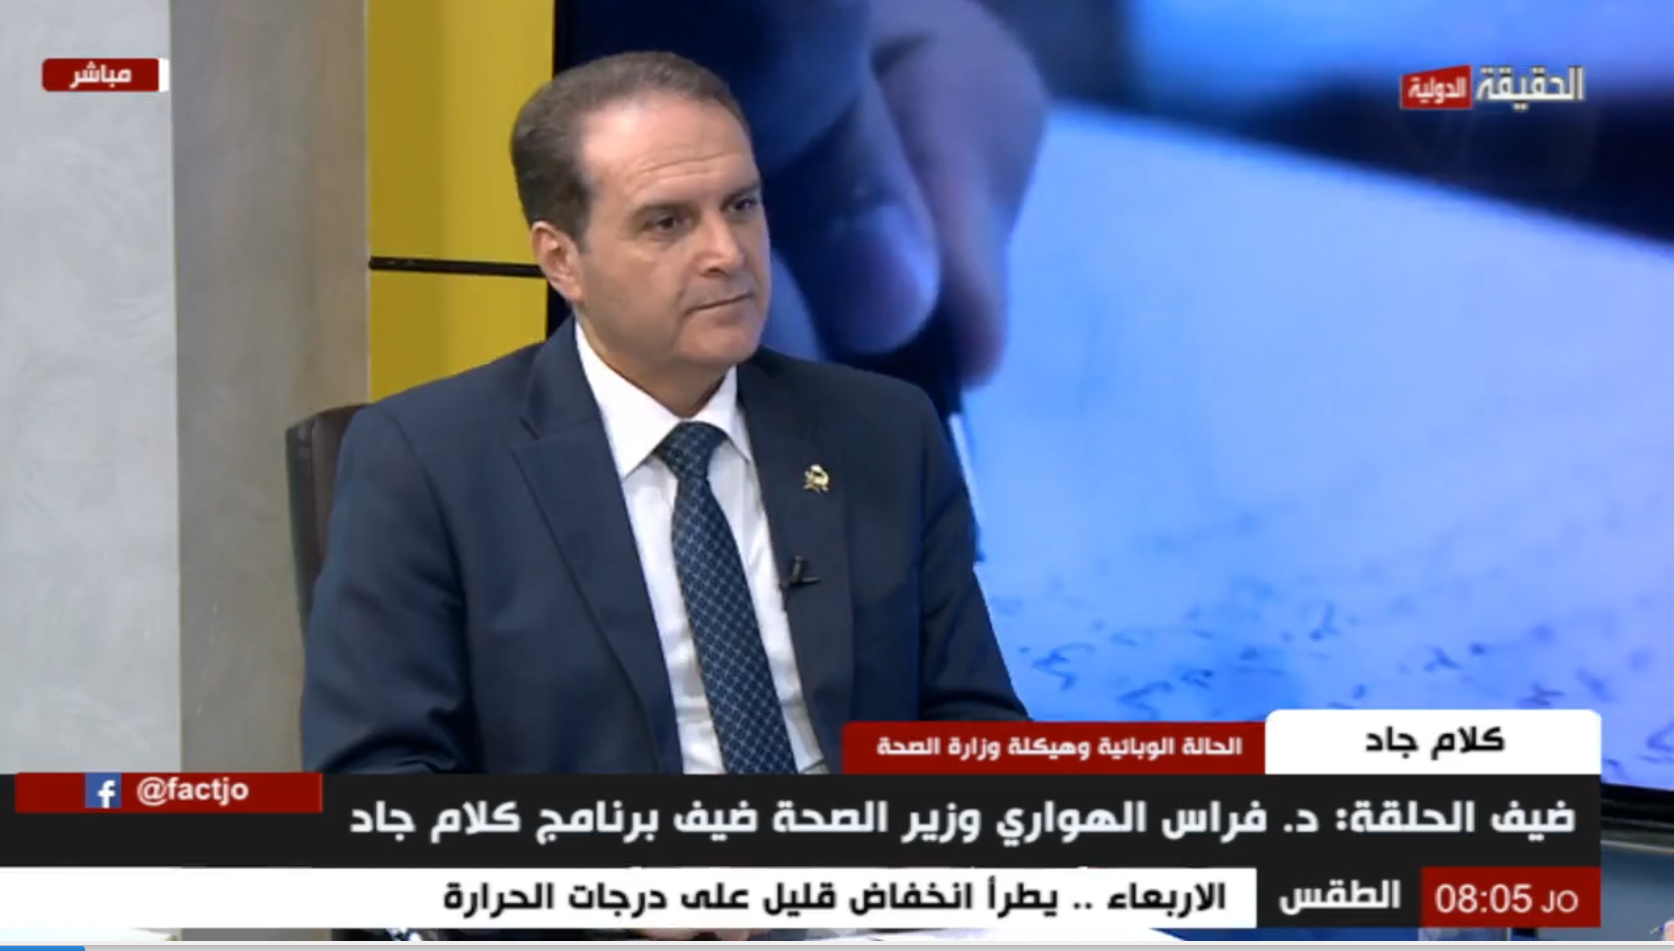 وزير الصحة لـ"الحقيقة الدولية": لم المس وجود قوى شد عكسي في الوزارة - فيديو